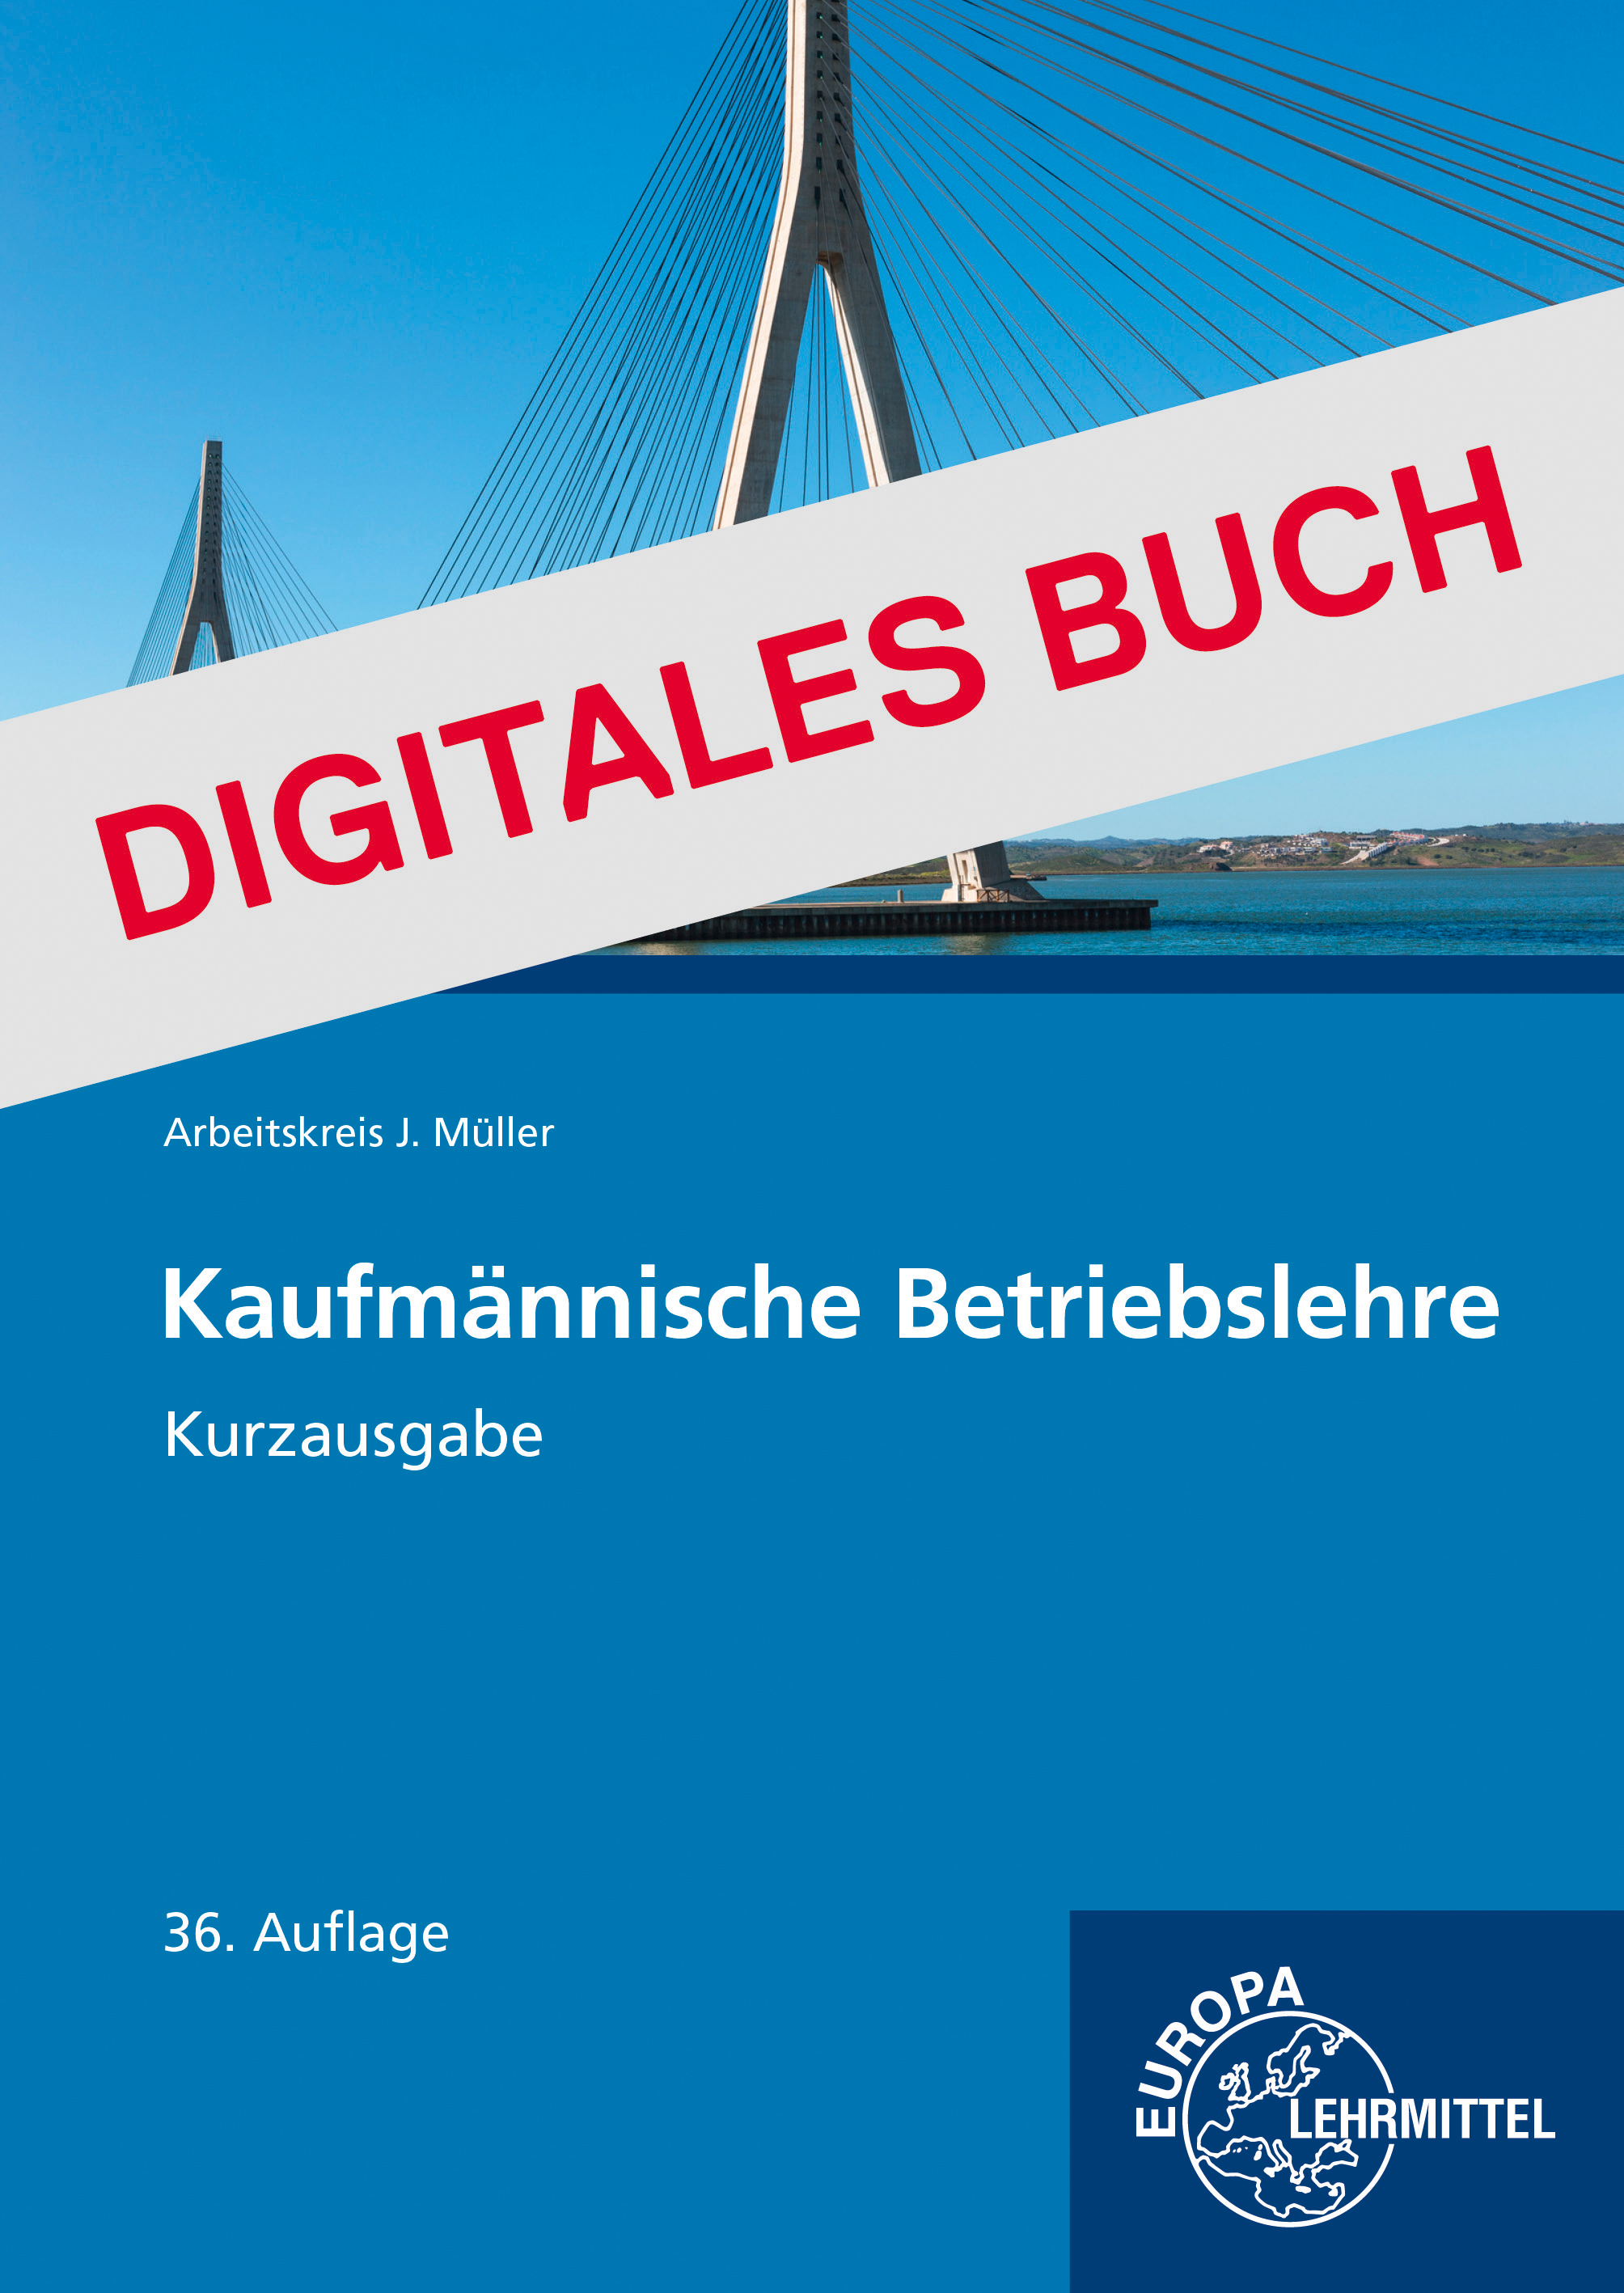 Kaufmännische Betriebslehre Kurzausgabe - Digitales Buch